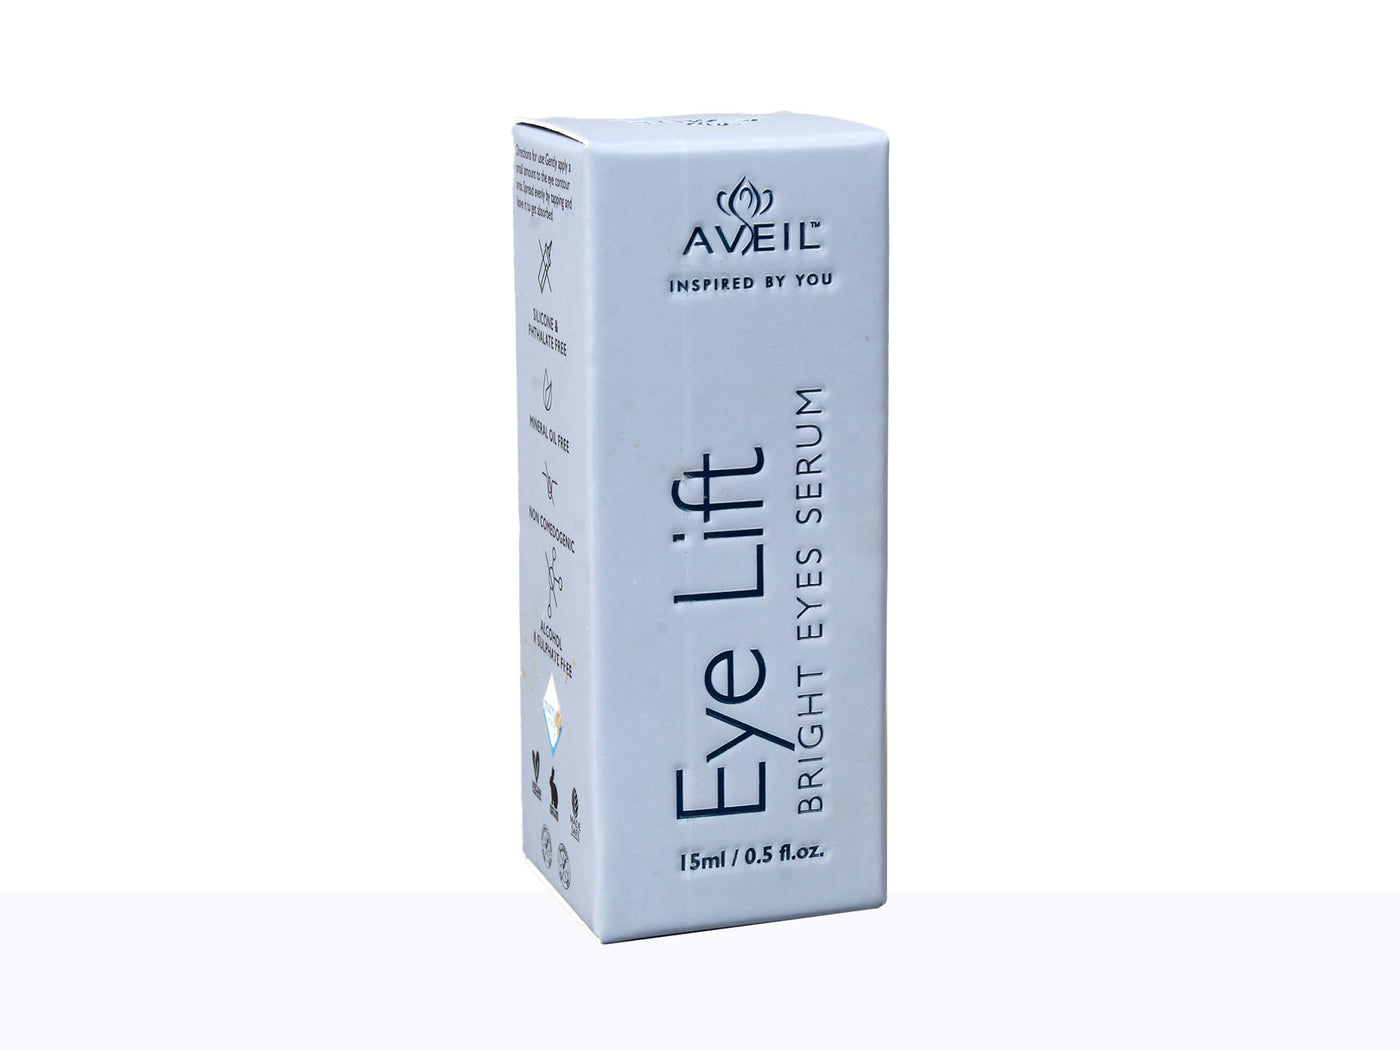 Aveil Eye Lift Bright Eye Serum - Clinikally